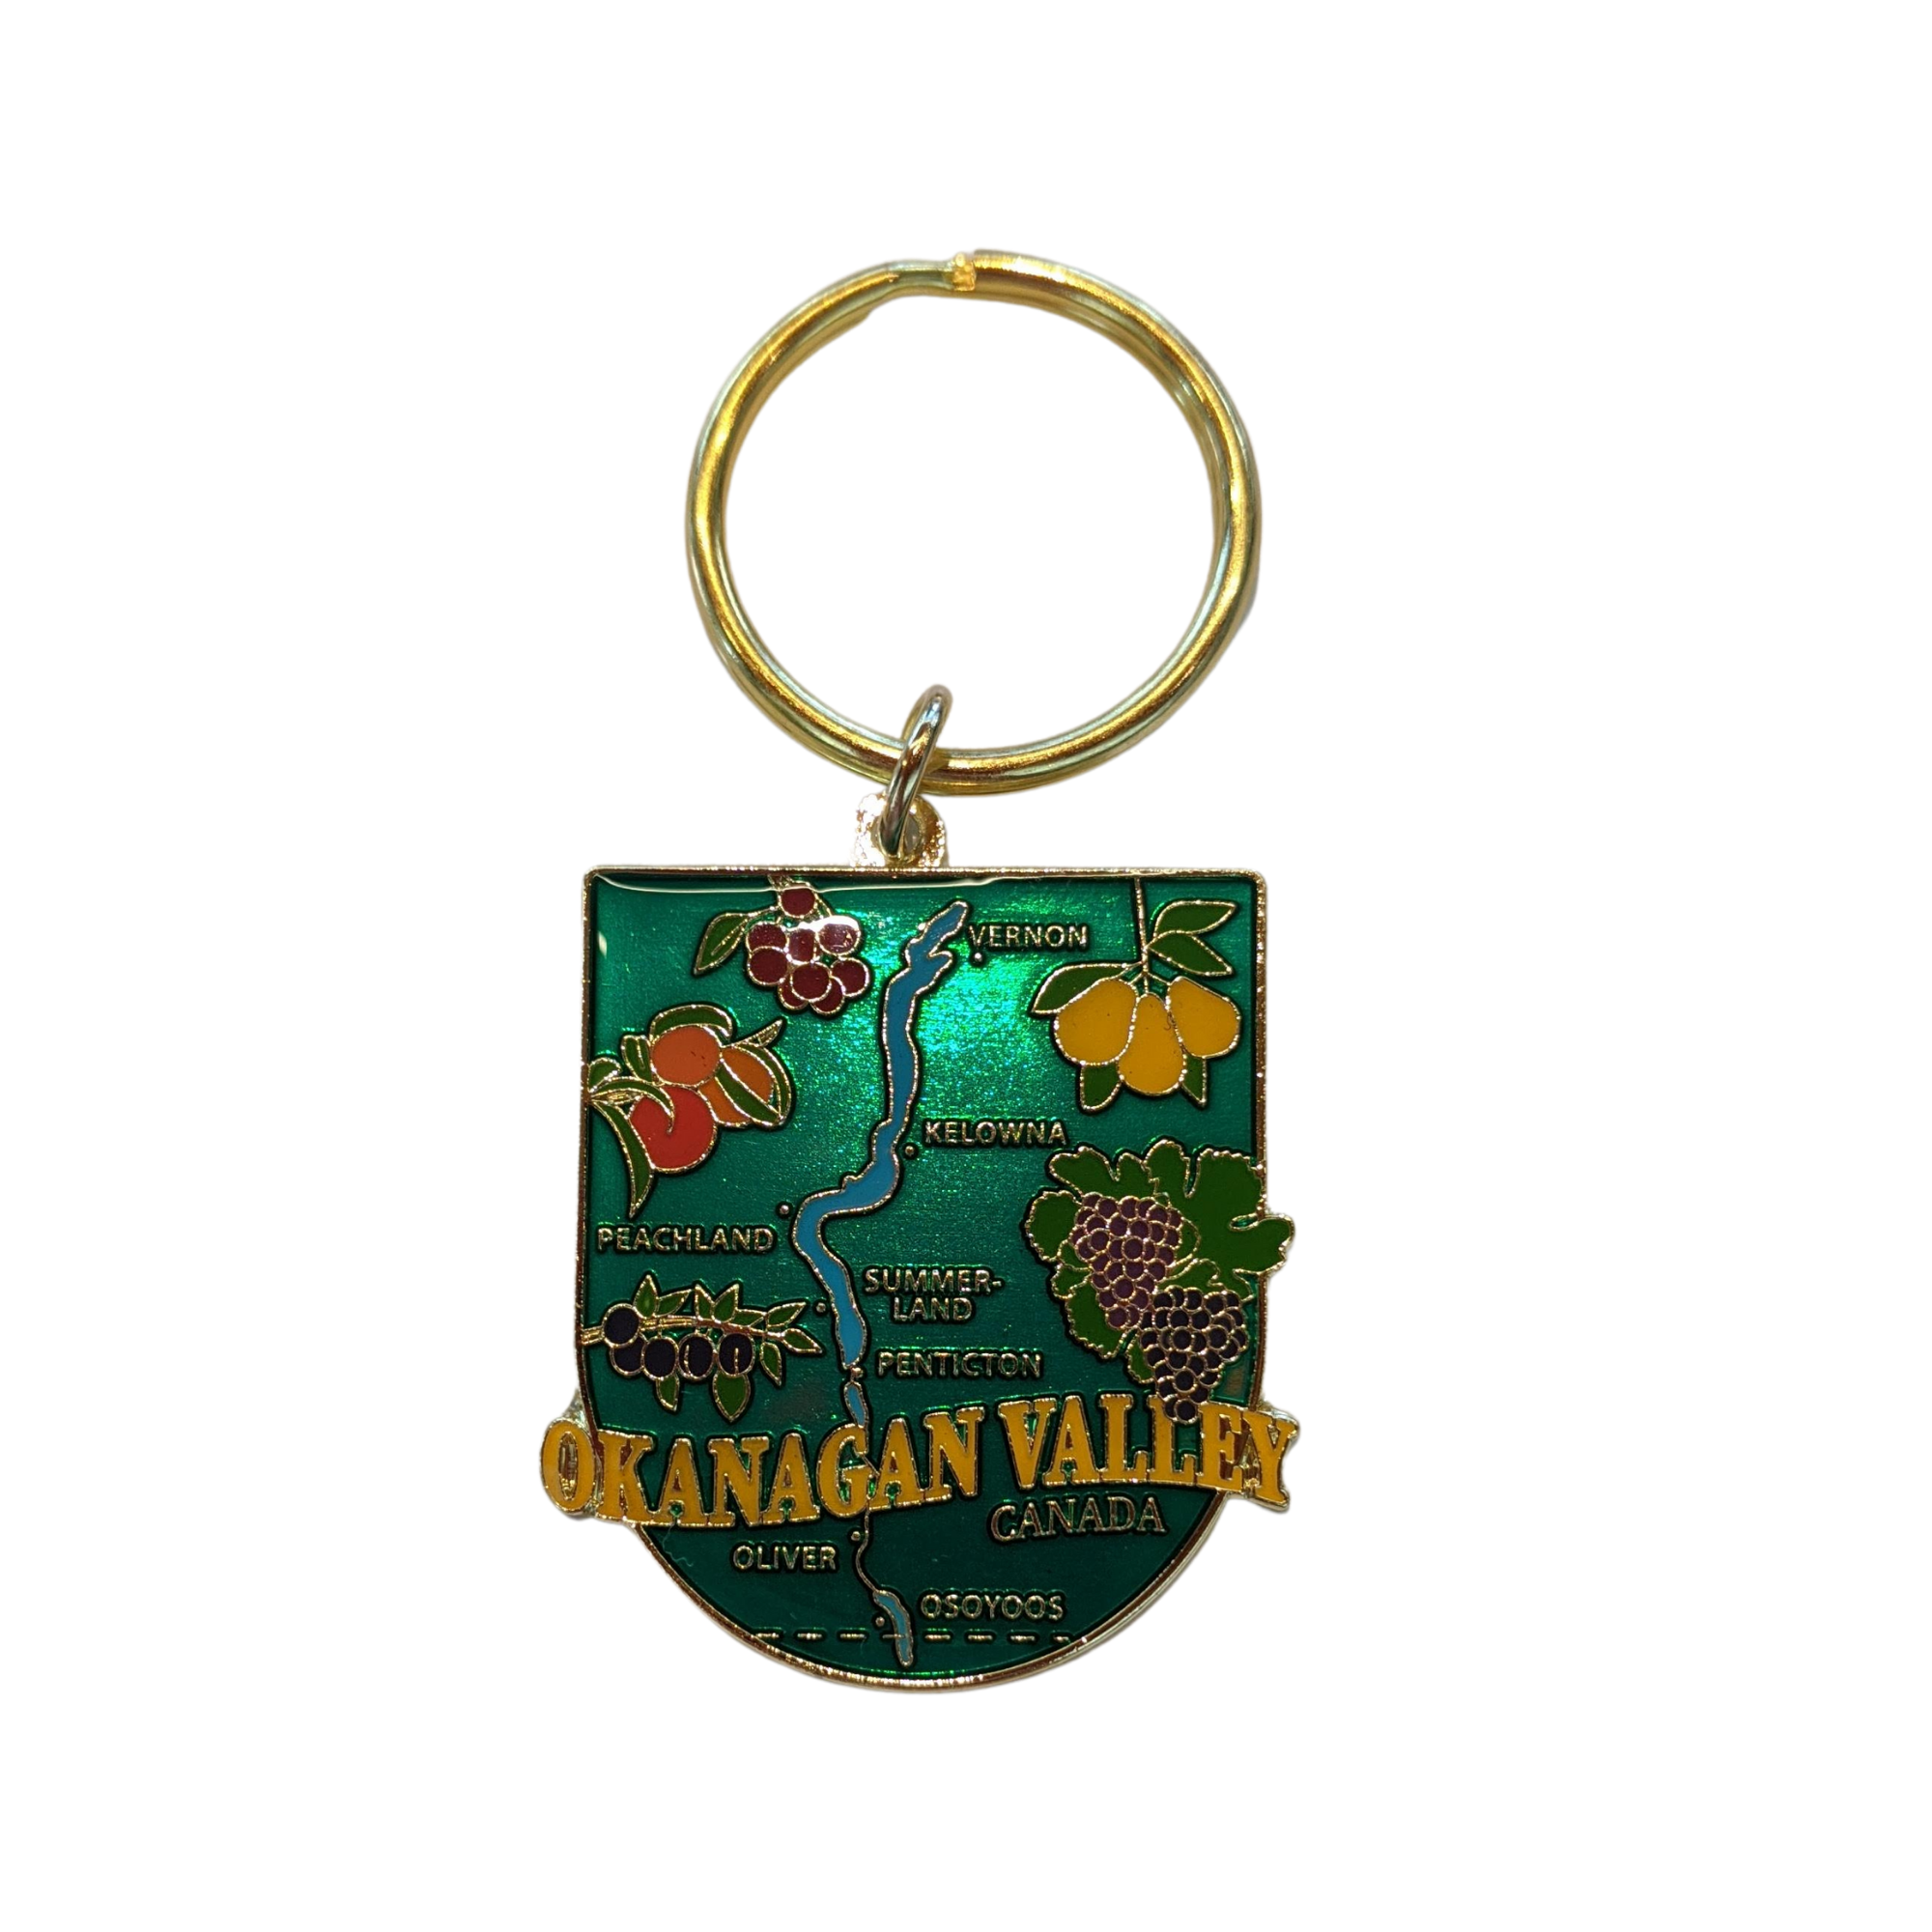 Okanagan Valley Keychain